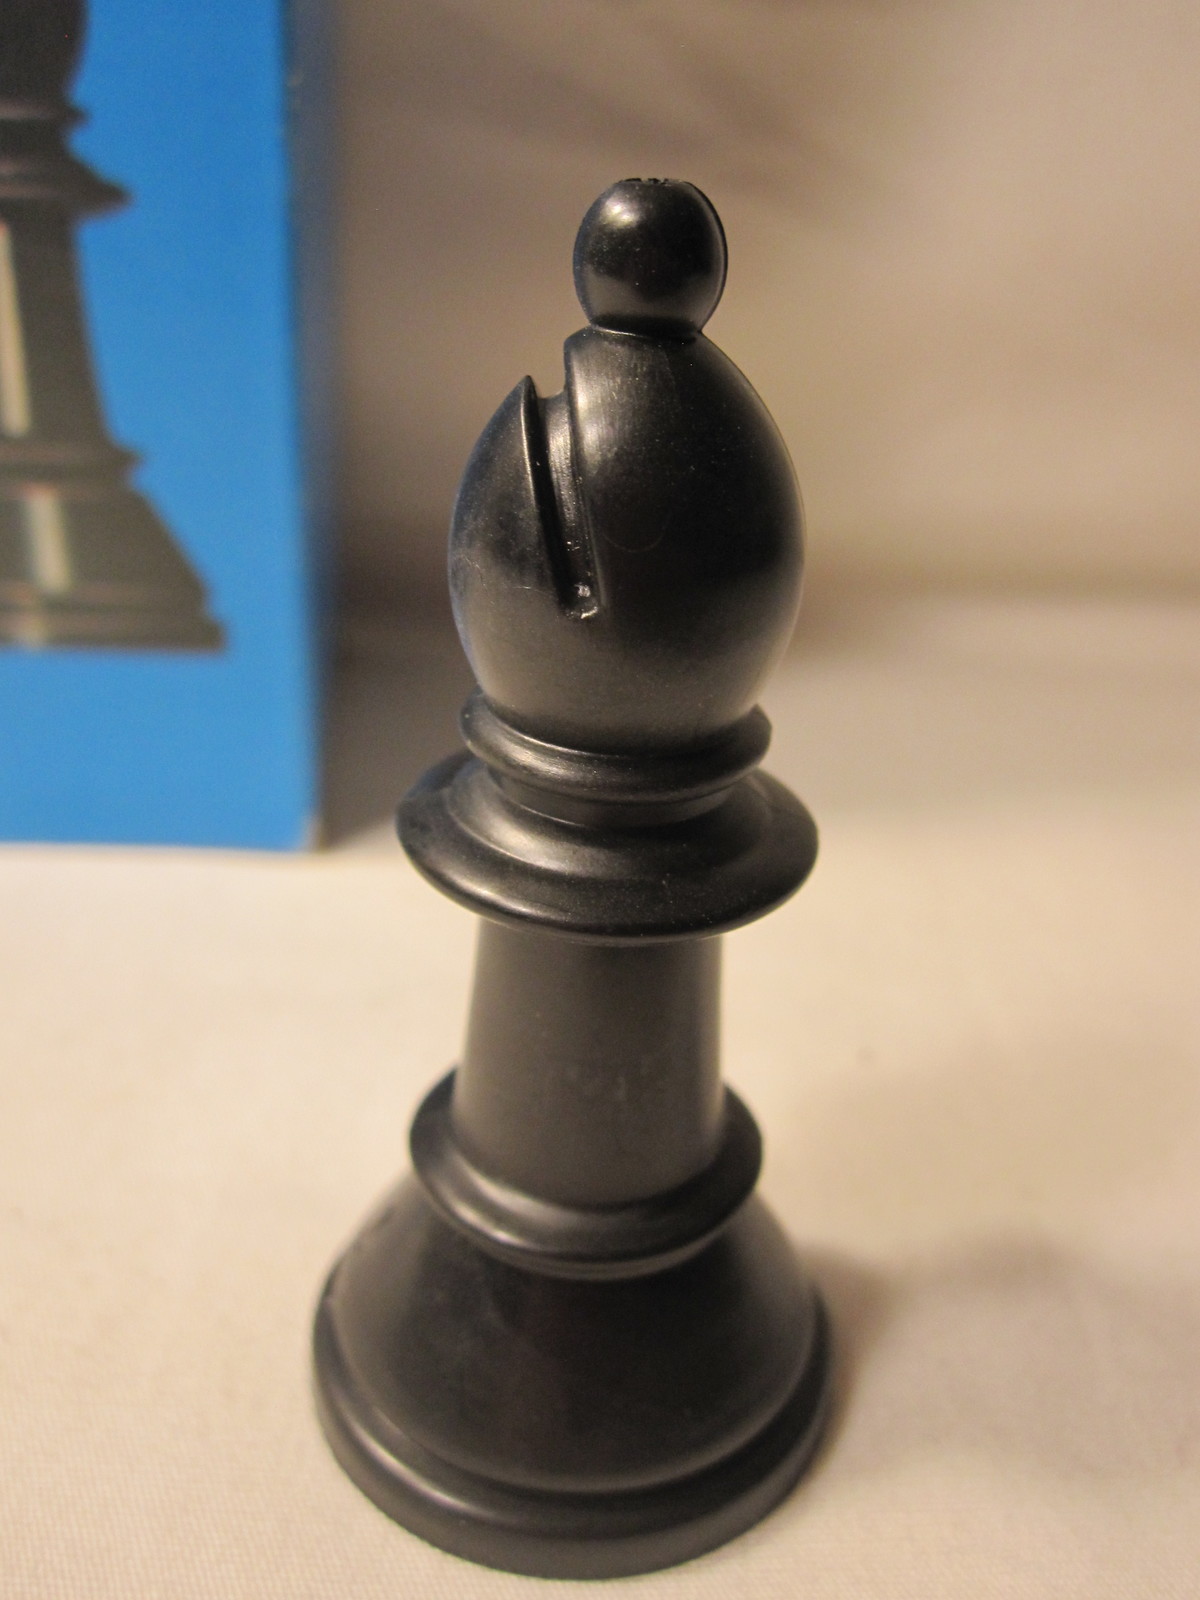 1974 Whitman Chess & Checkers Set Game Piece: Black Bishop Pawn - $1.25